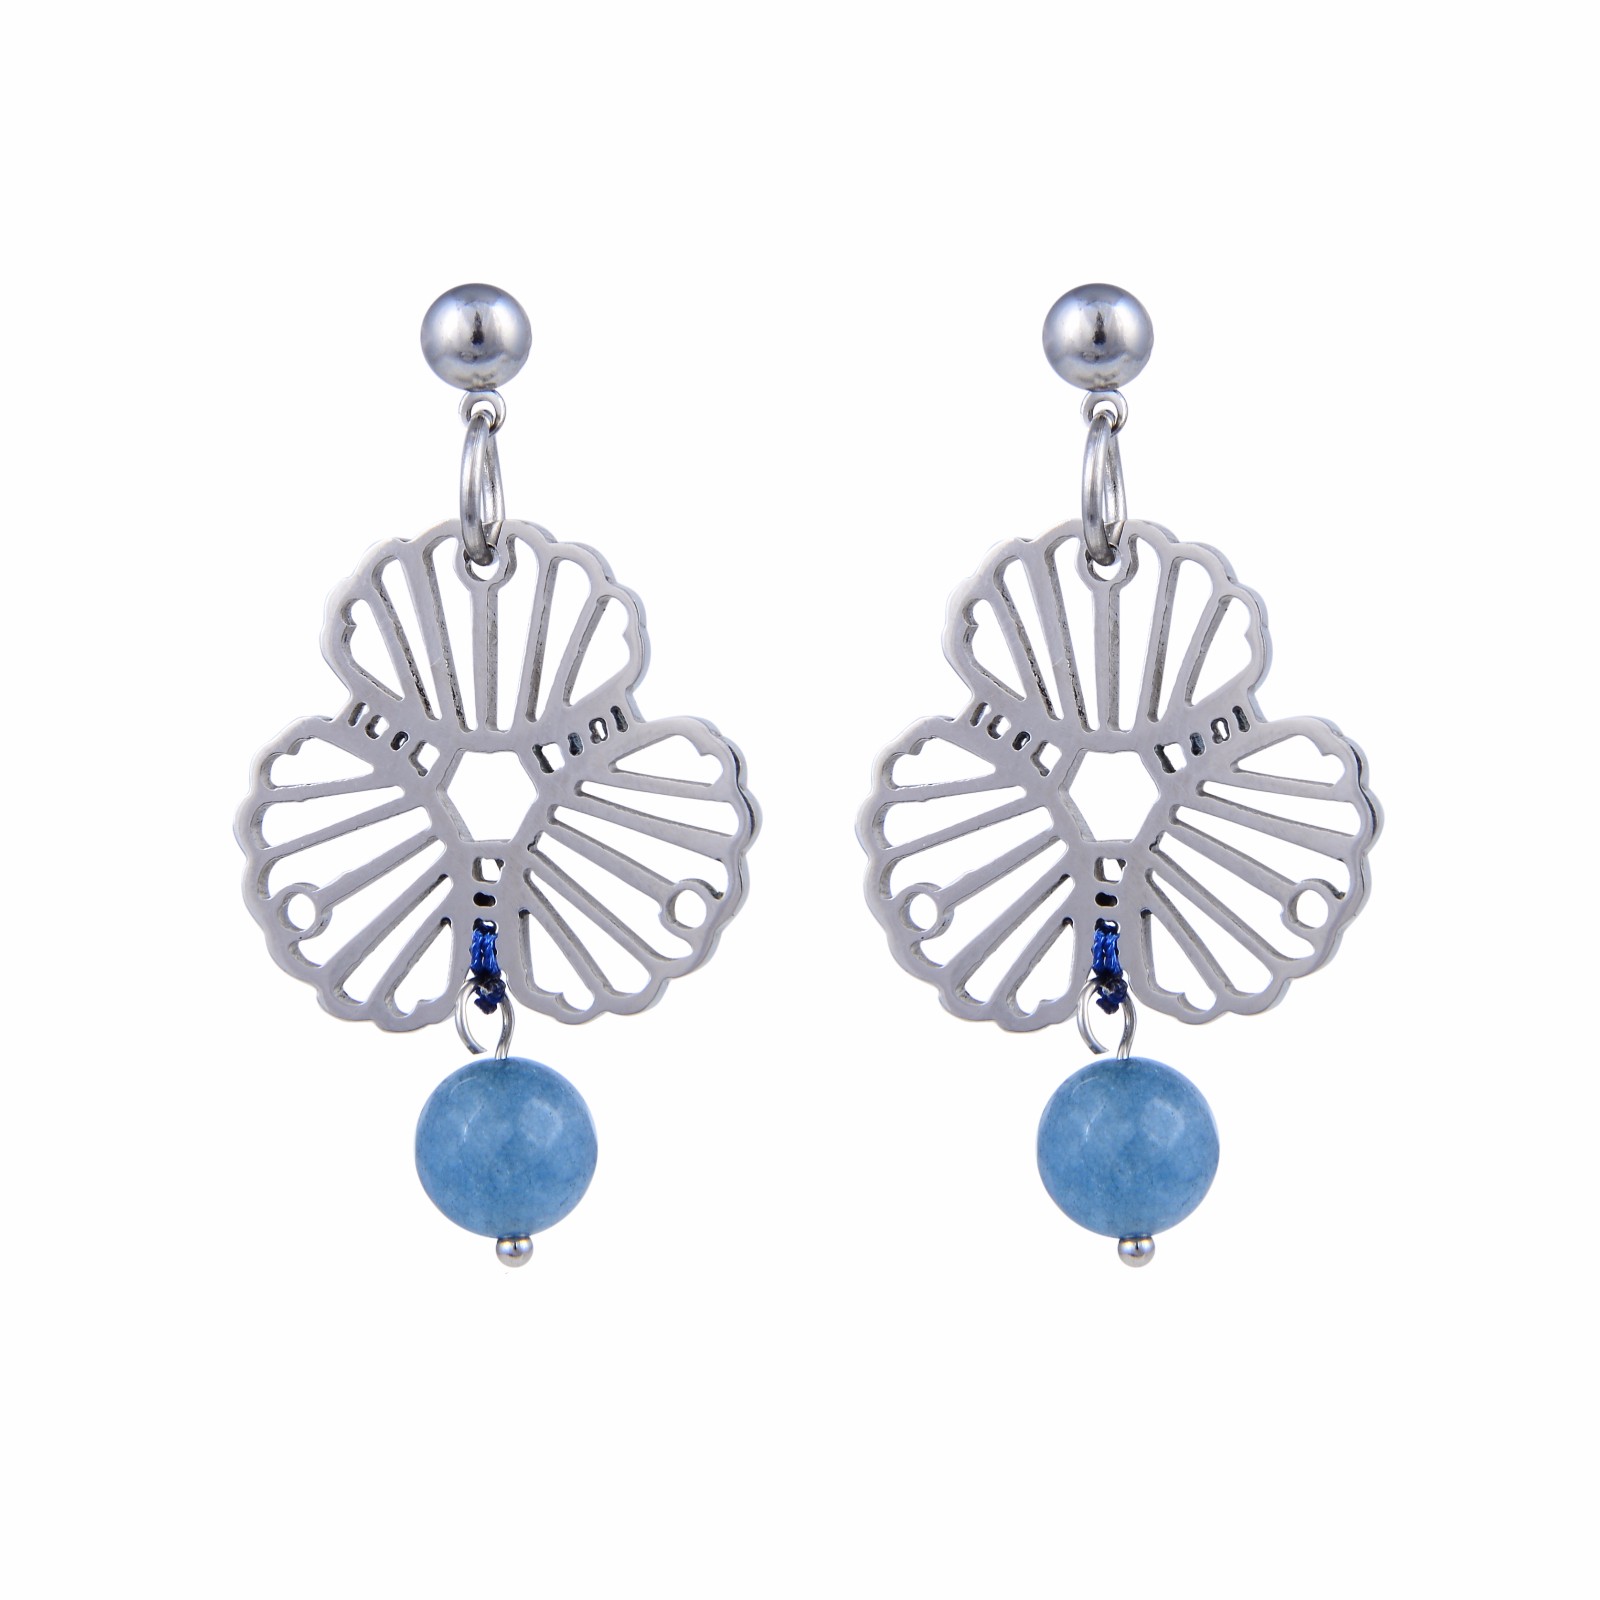 Handmade elegant beads pendant earrings